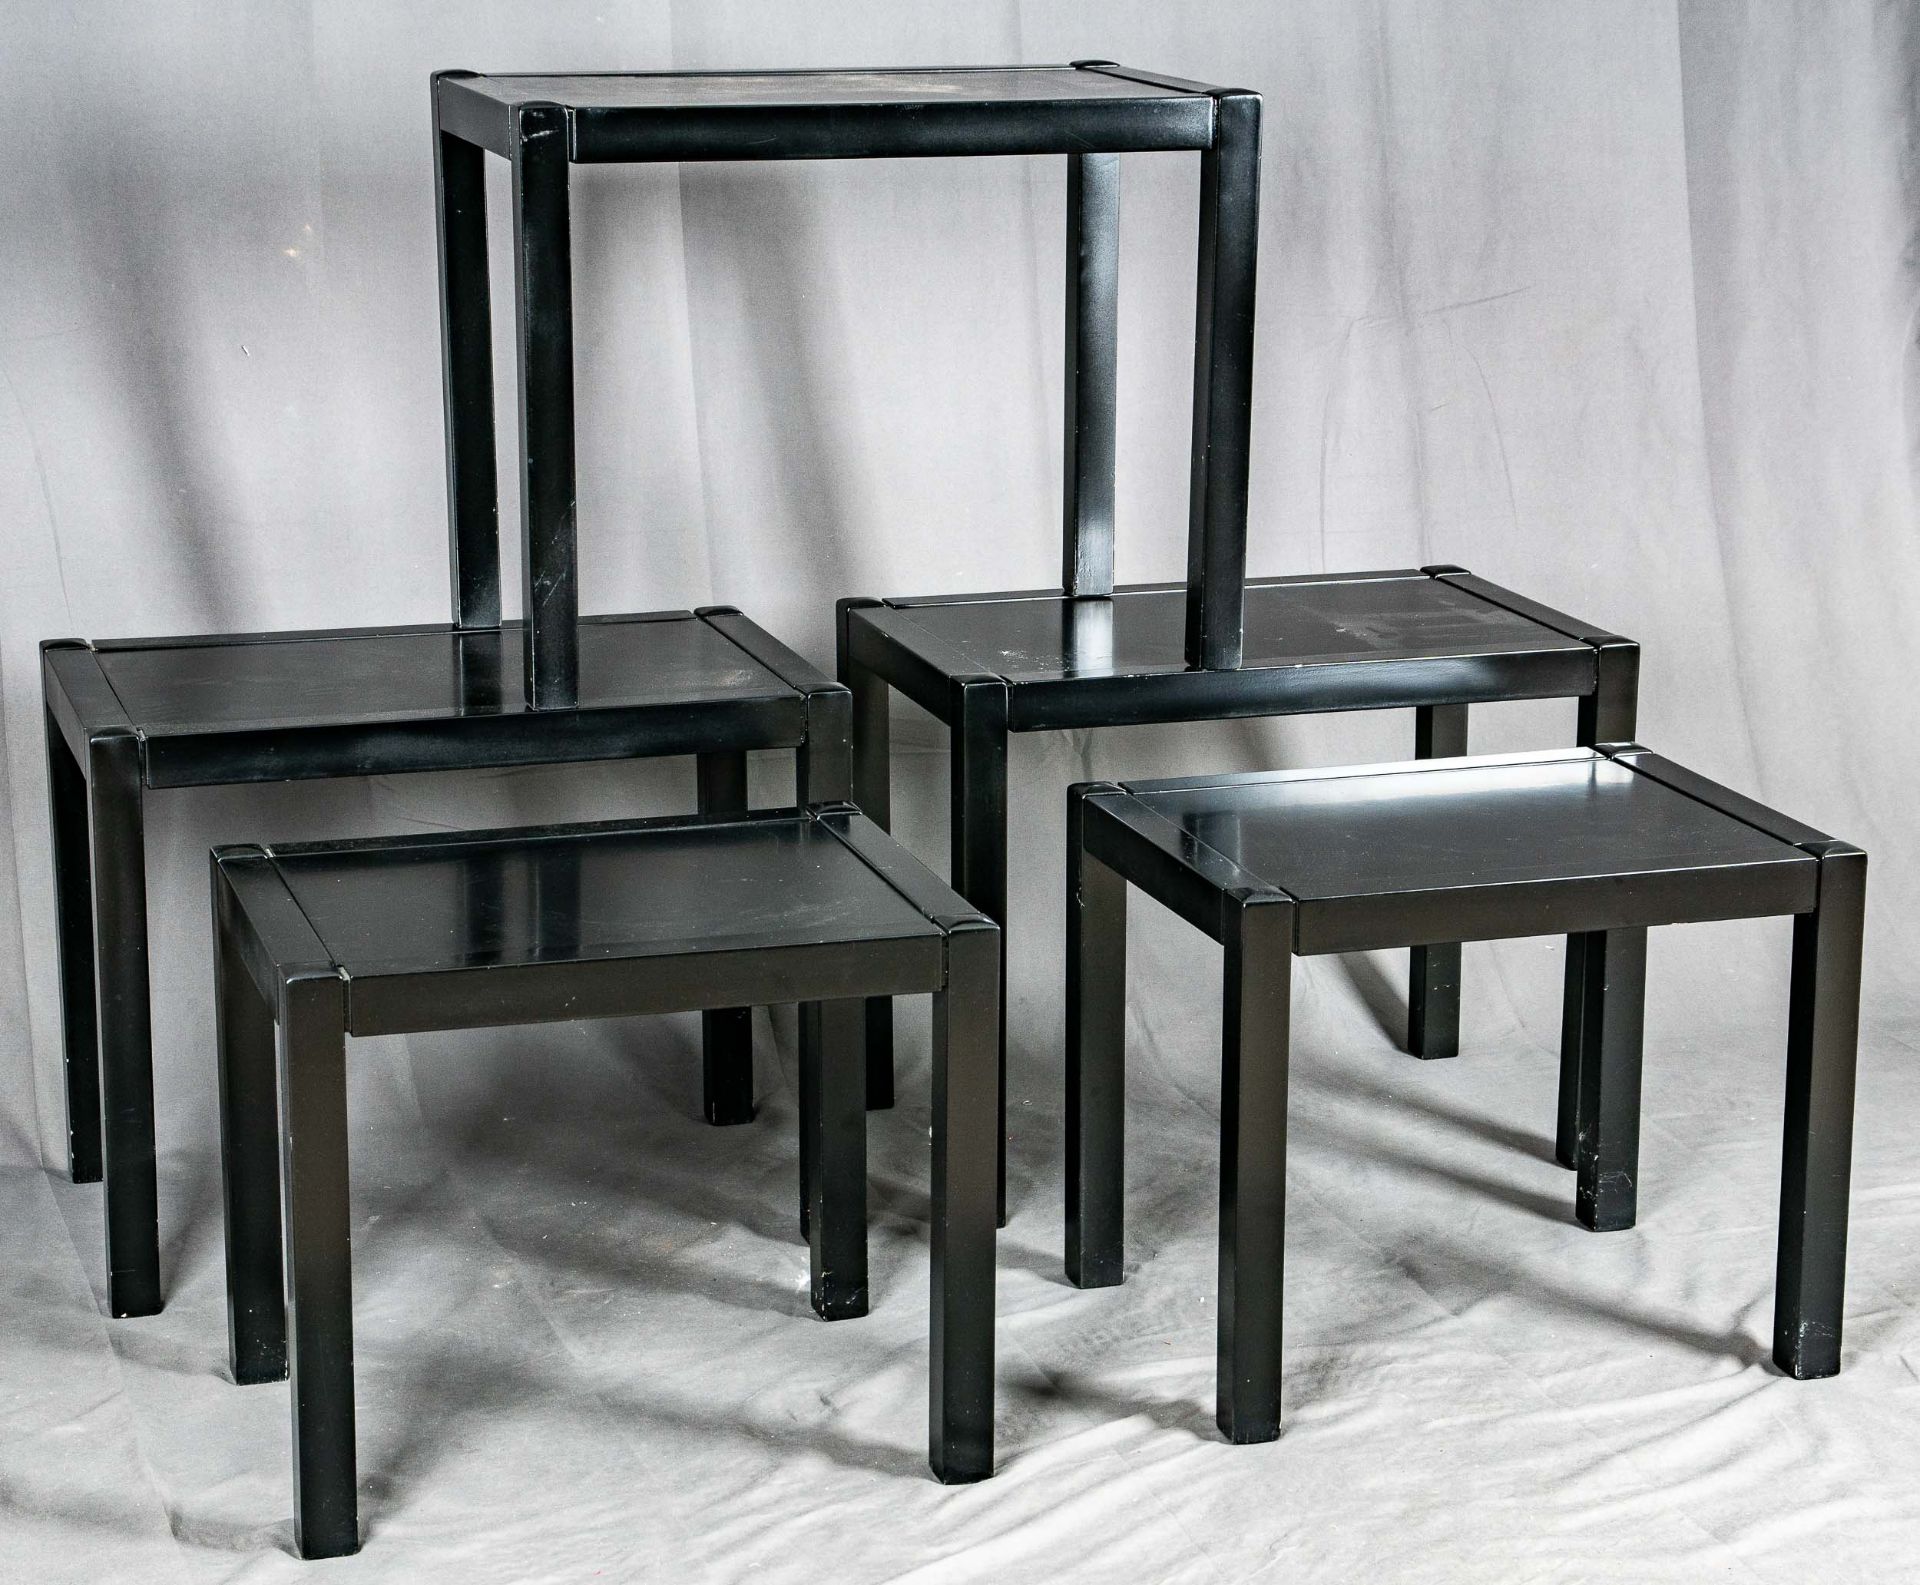 5 Beistelltische in 2 Größen, rechteckig, schwarz lackiertes Holz mit eingesetzter Tischplatte, des - Image 2 of 4